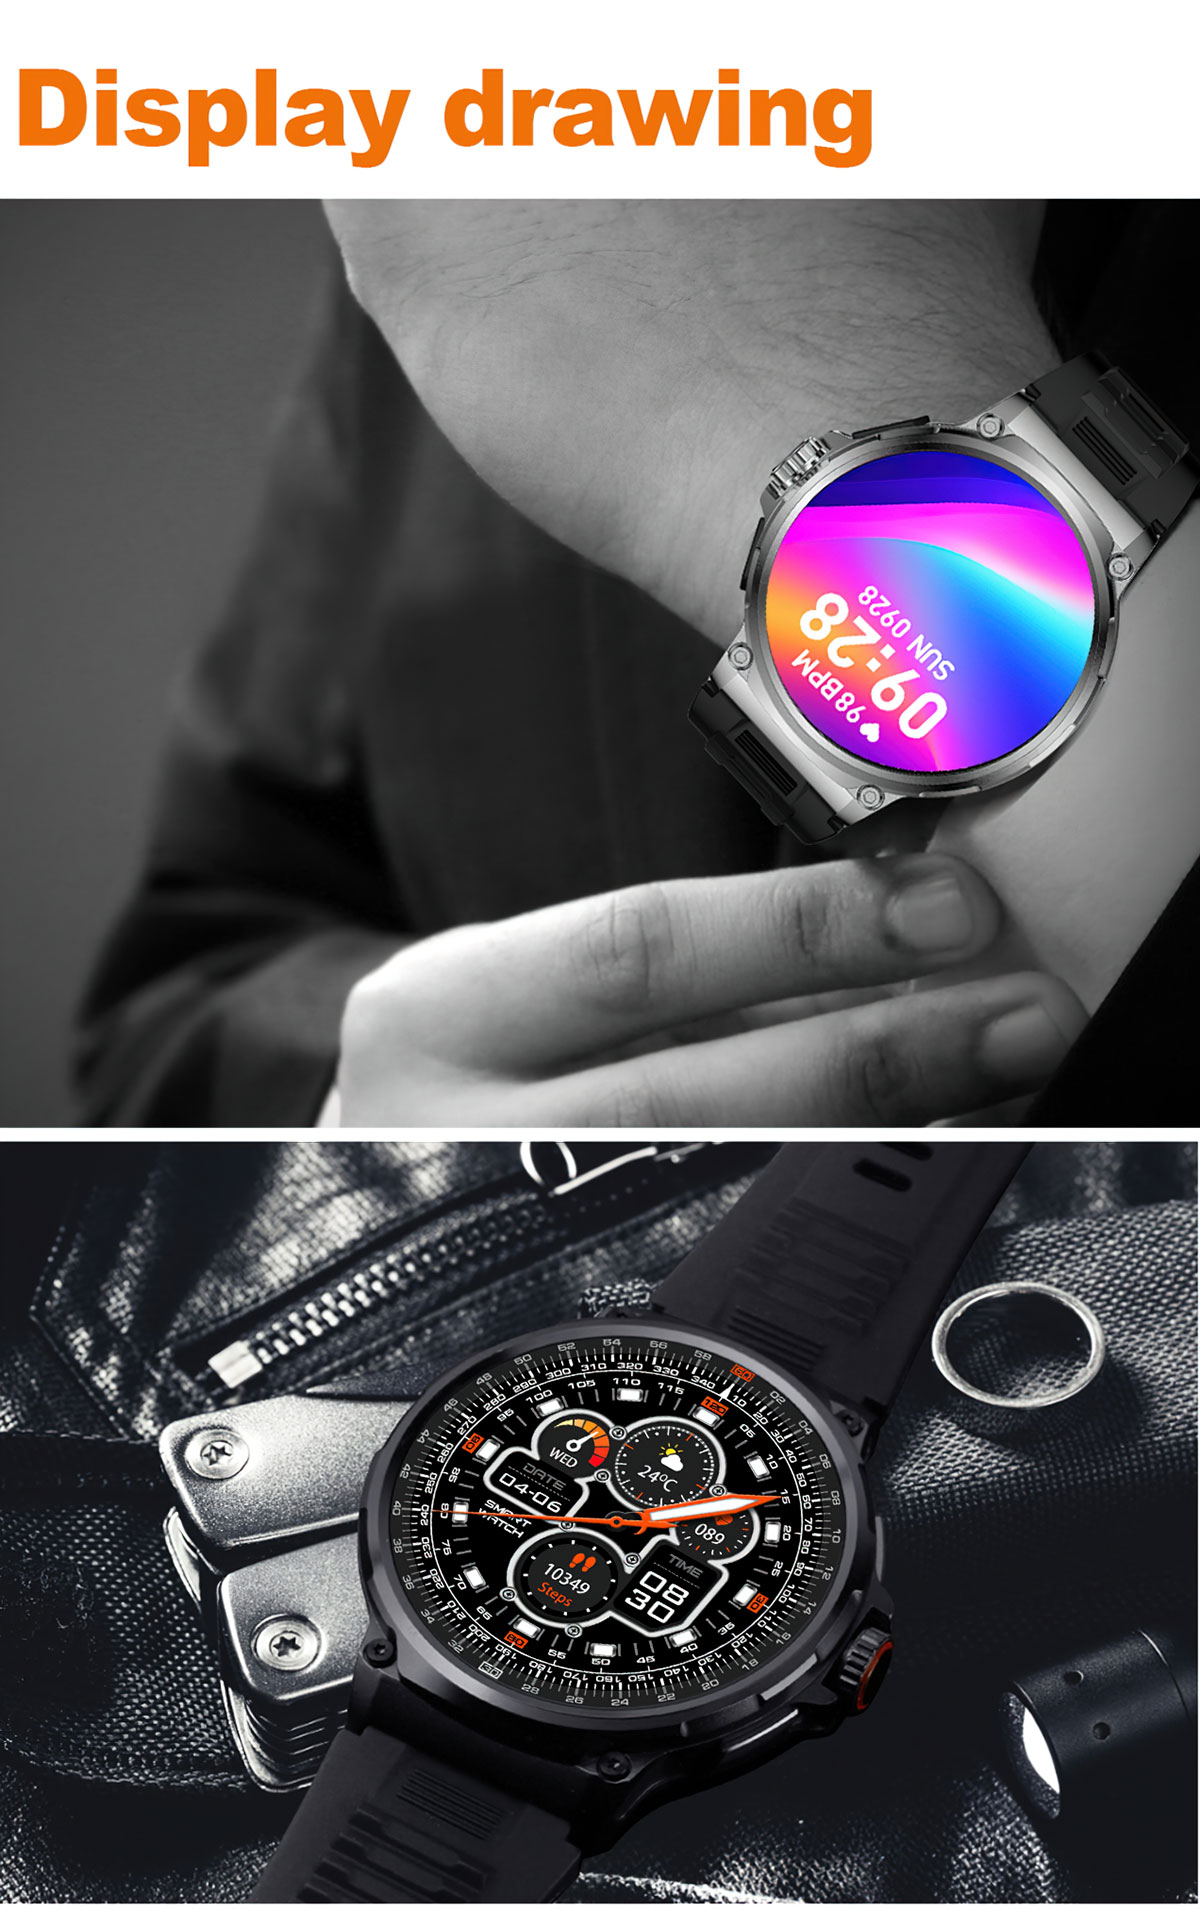 V69 Smartwatch 1.85 инчийн дэлгэц, 400+ цагны нүүр, 710 мА батерейтай ухаалаг цаг